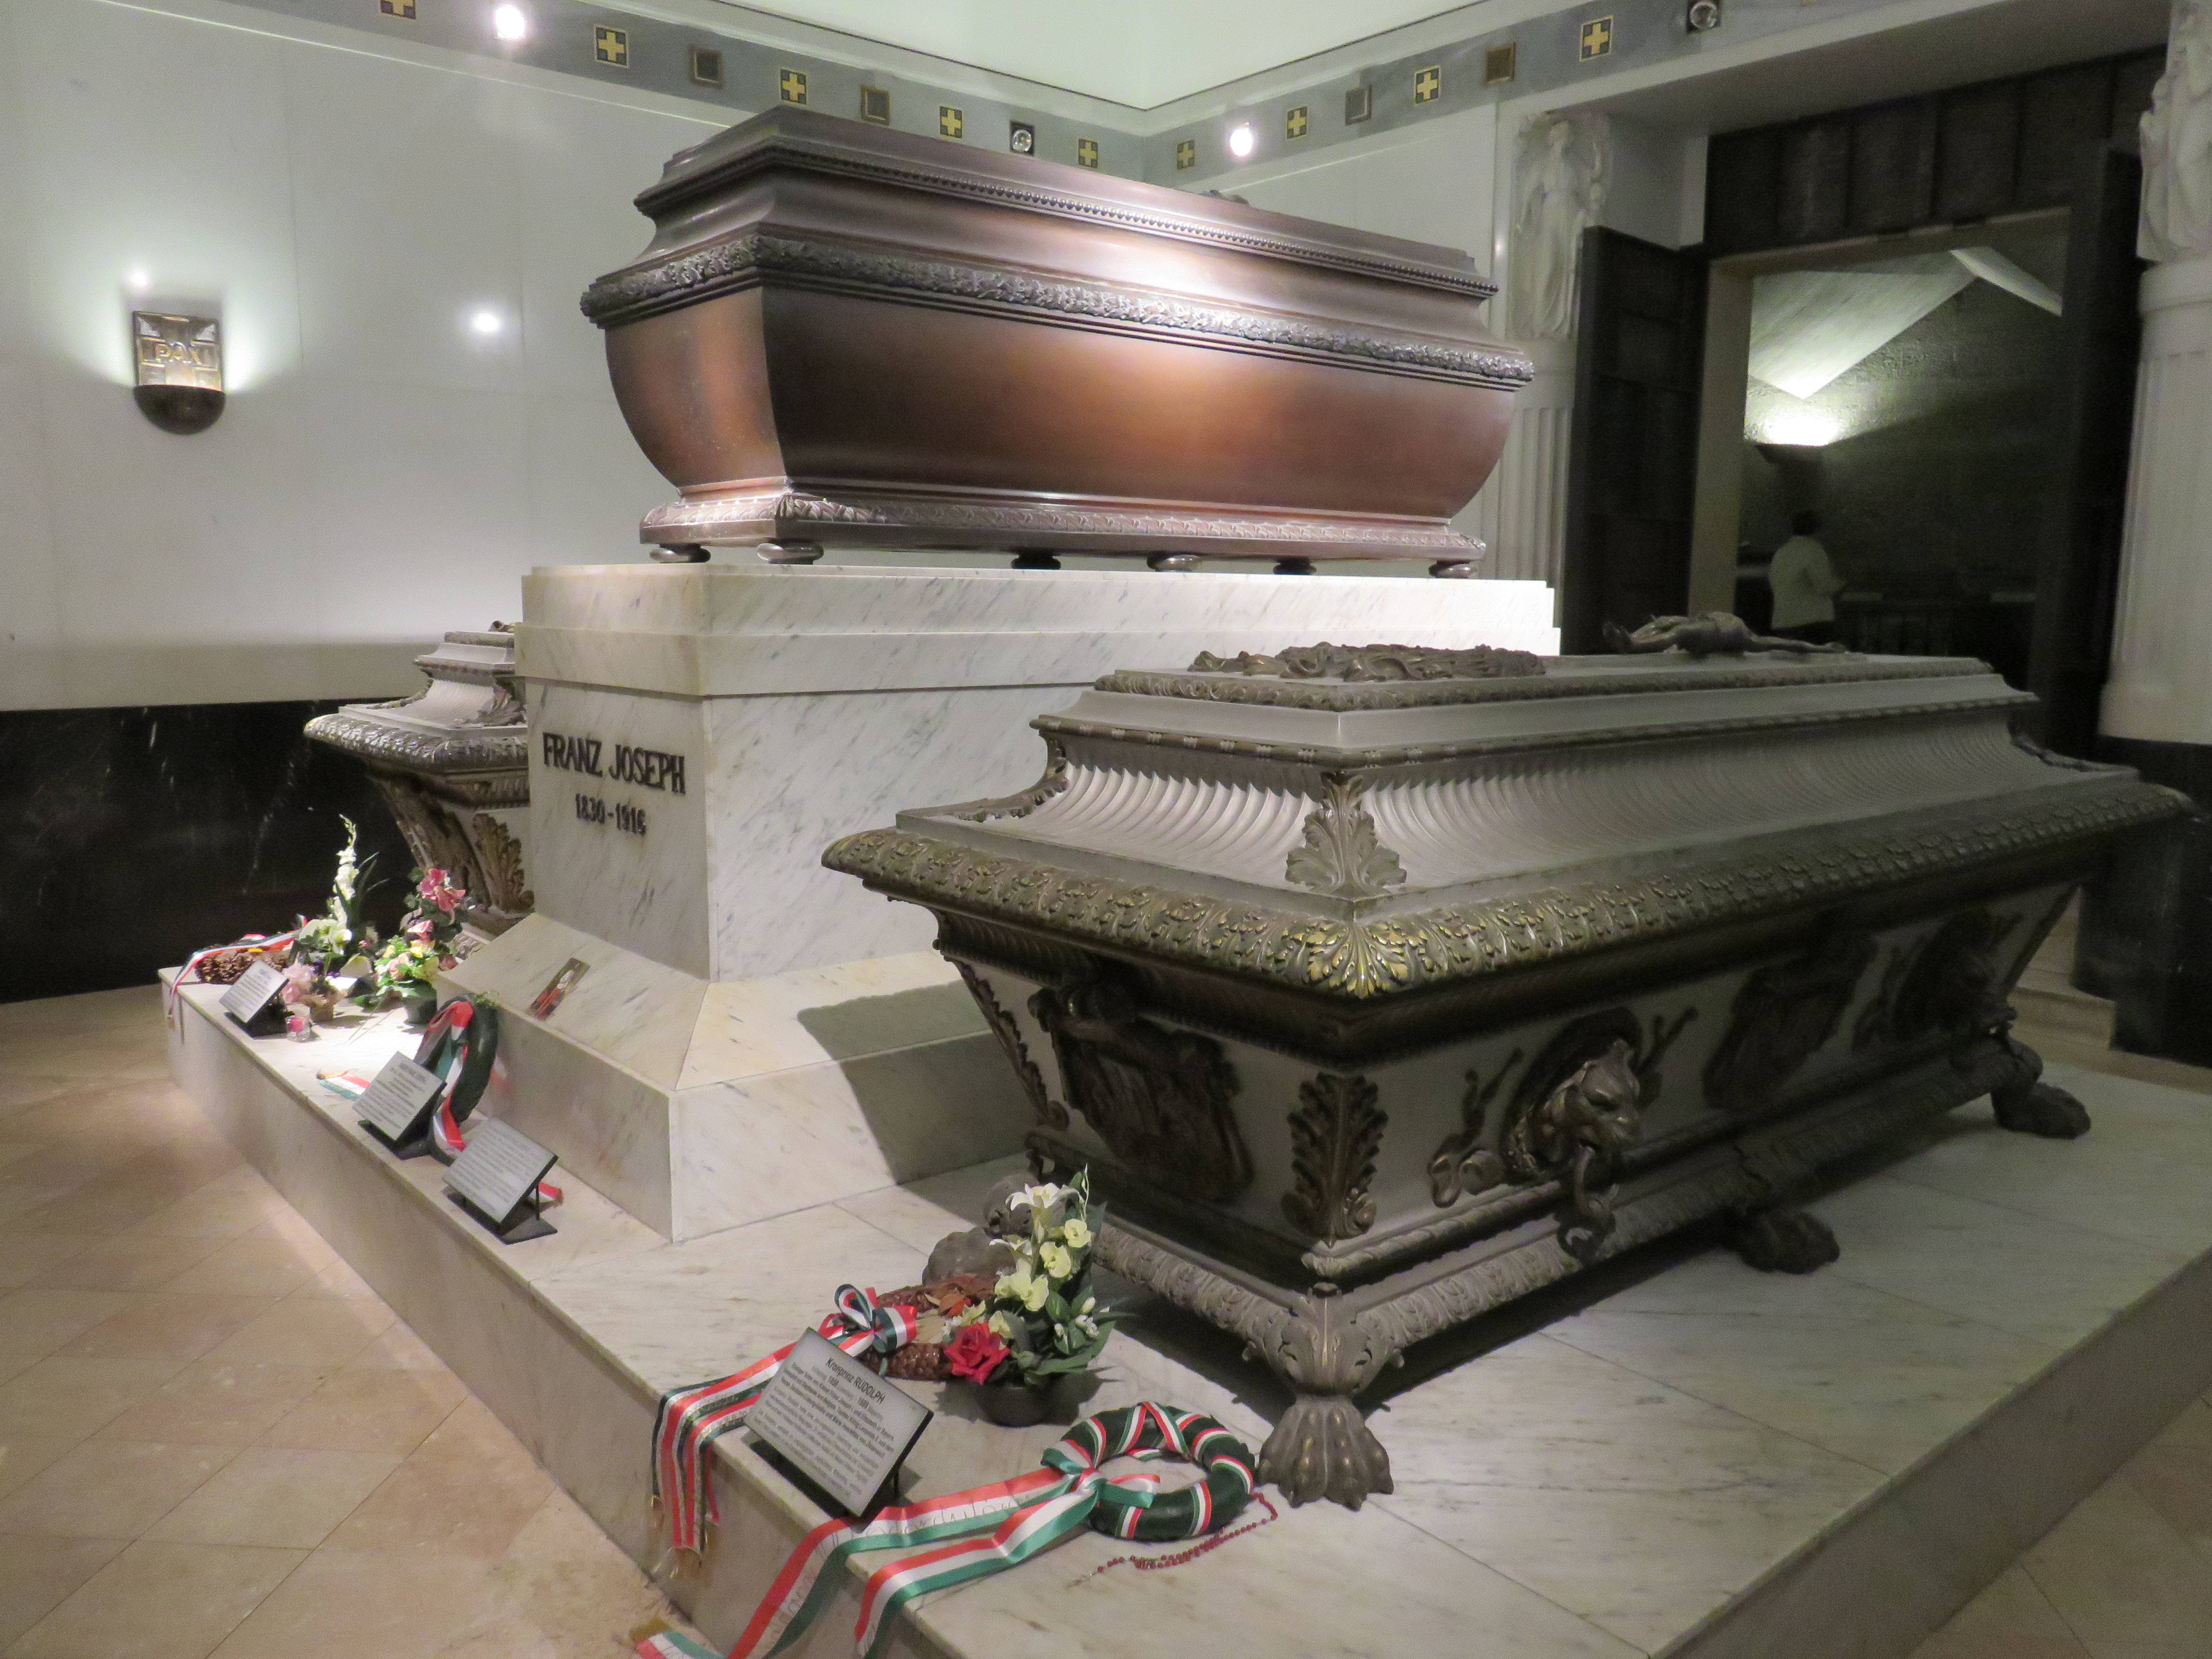 Kapuzinergruft Wien: Sarkophage von Kaiser Franz Joseph I. und Kronprinz Rudolf